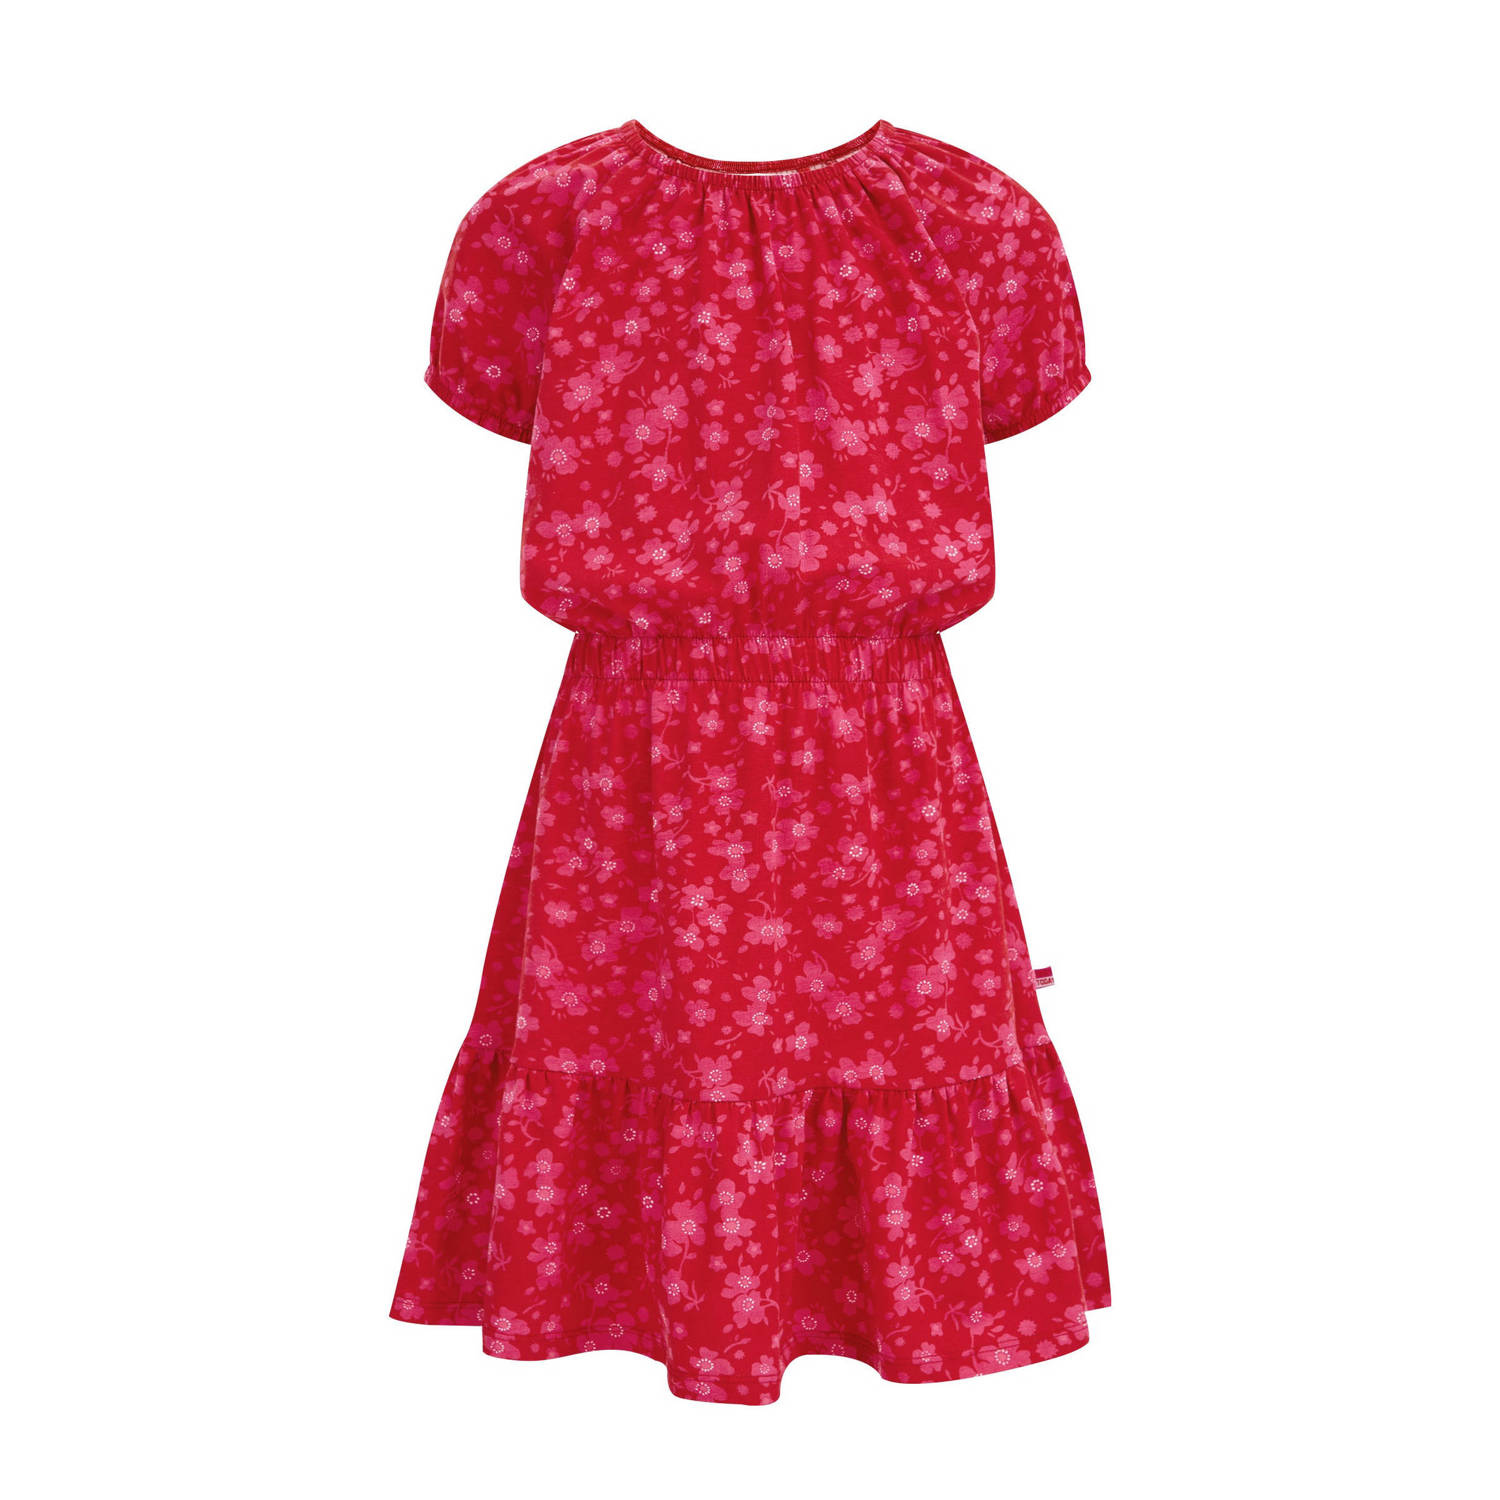 WE Fashion gebloemde jurk rood roze Meisjes Katoen Ronde hals Bloemen 110 116